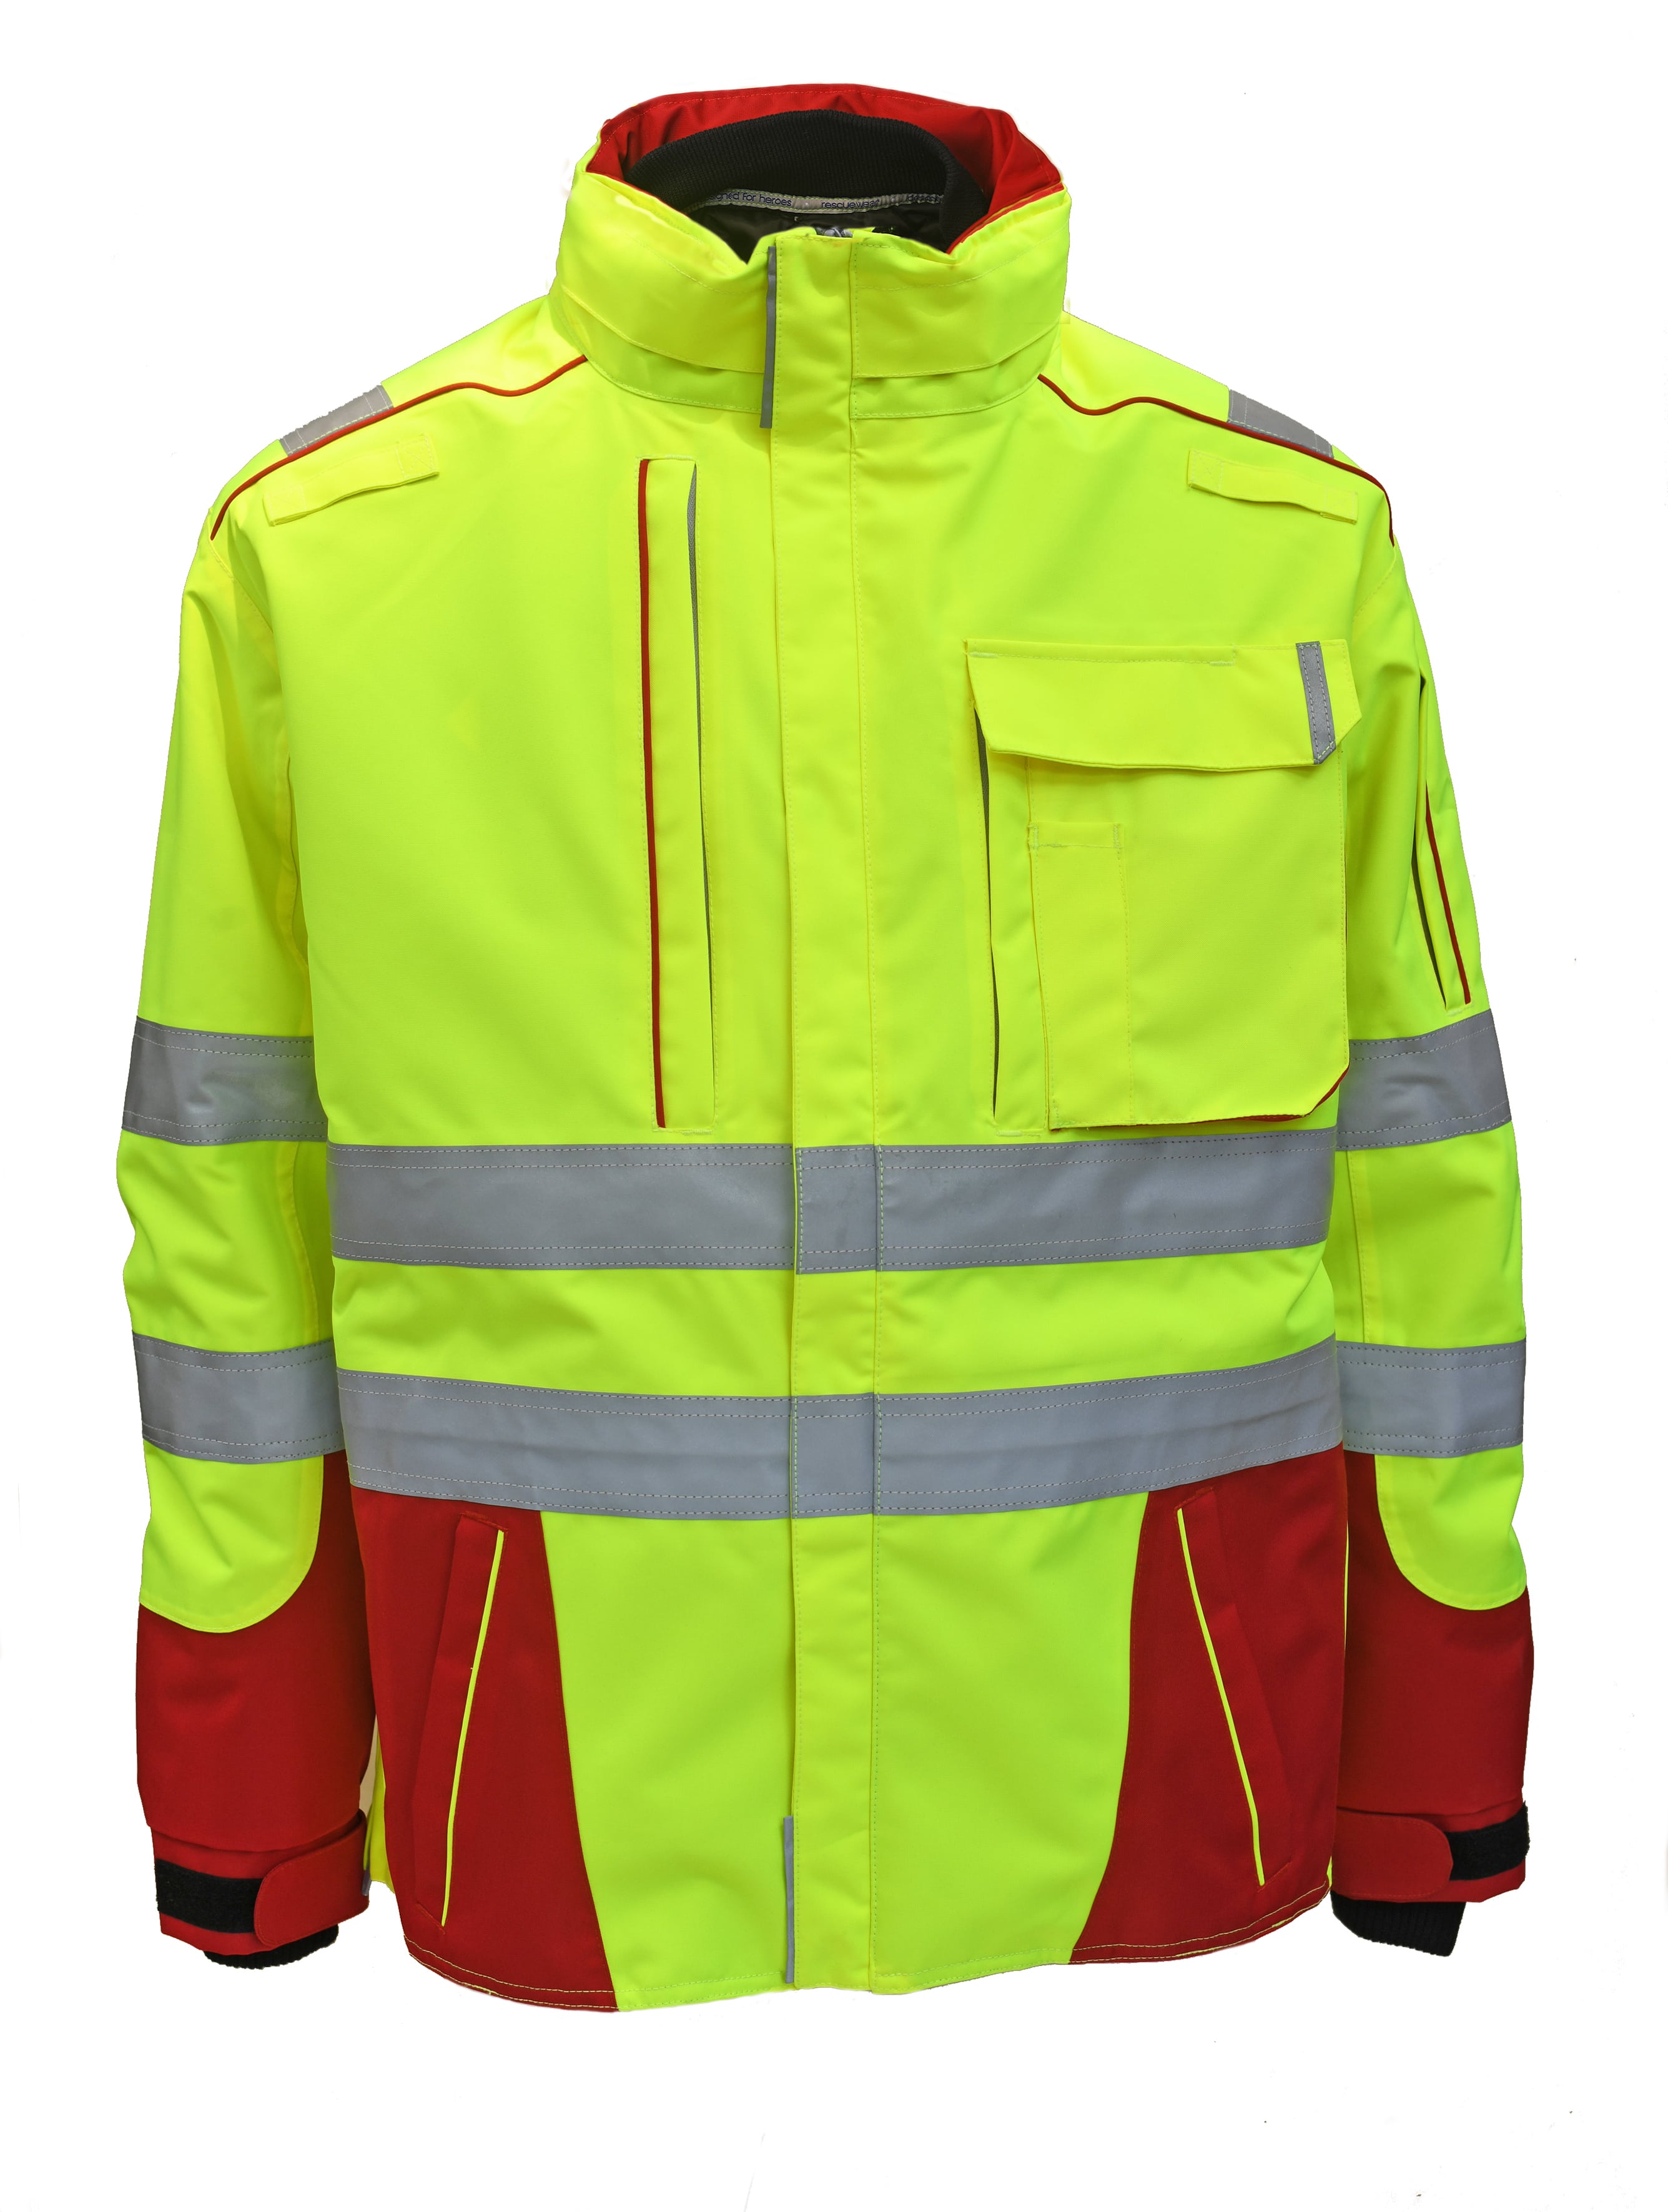 Rescuewear Midi-Parker 33858 Dynamic HiVis Klasse 3 Rot / Neon Gelb